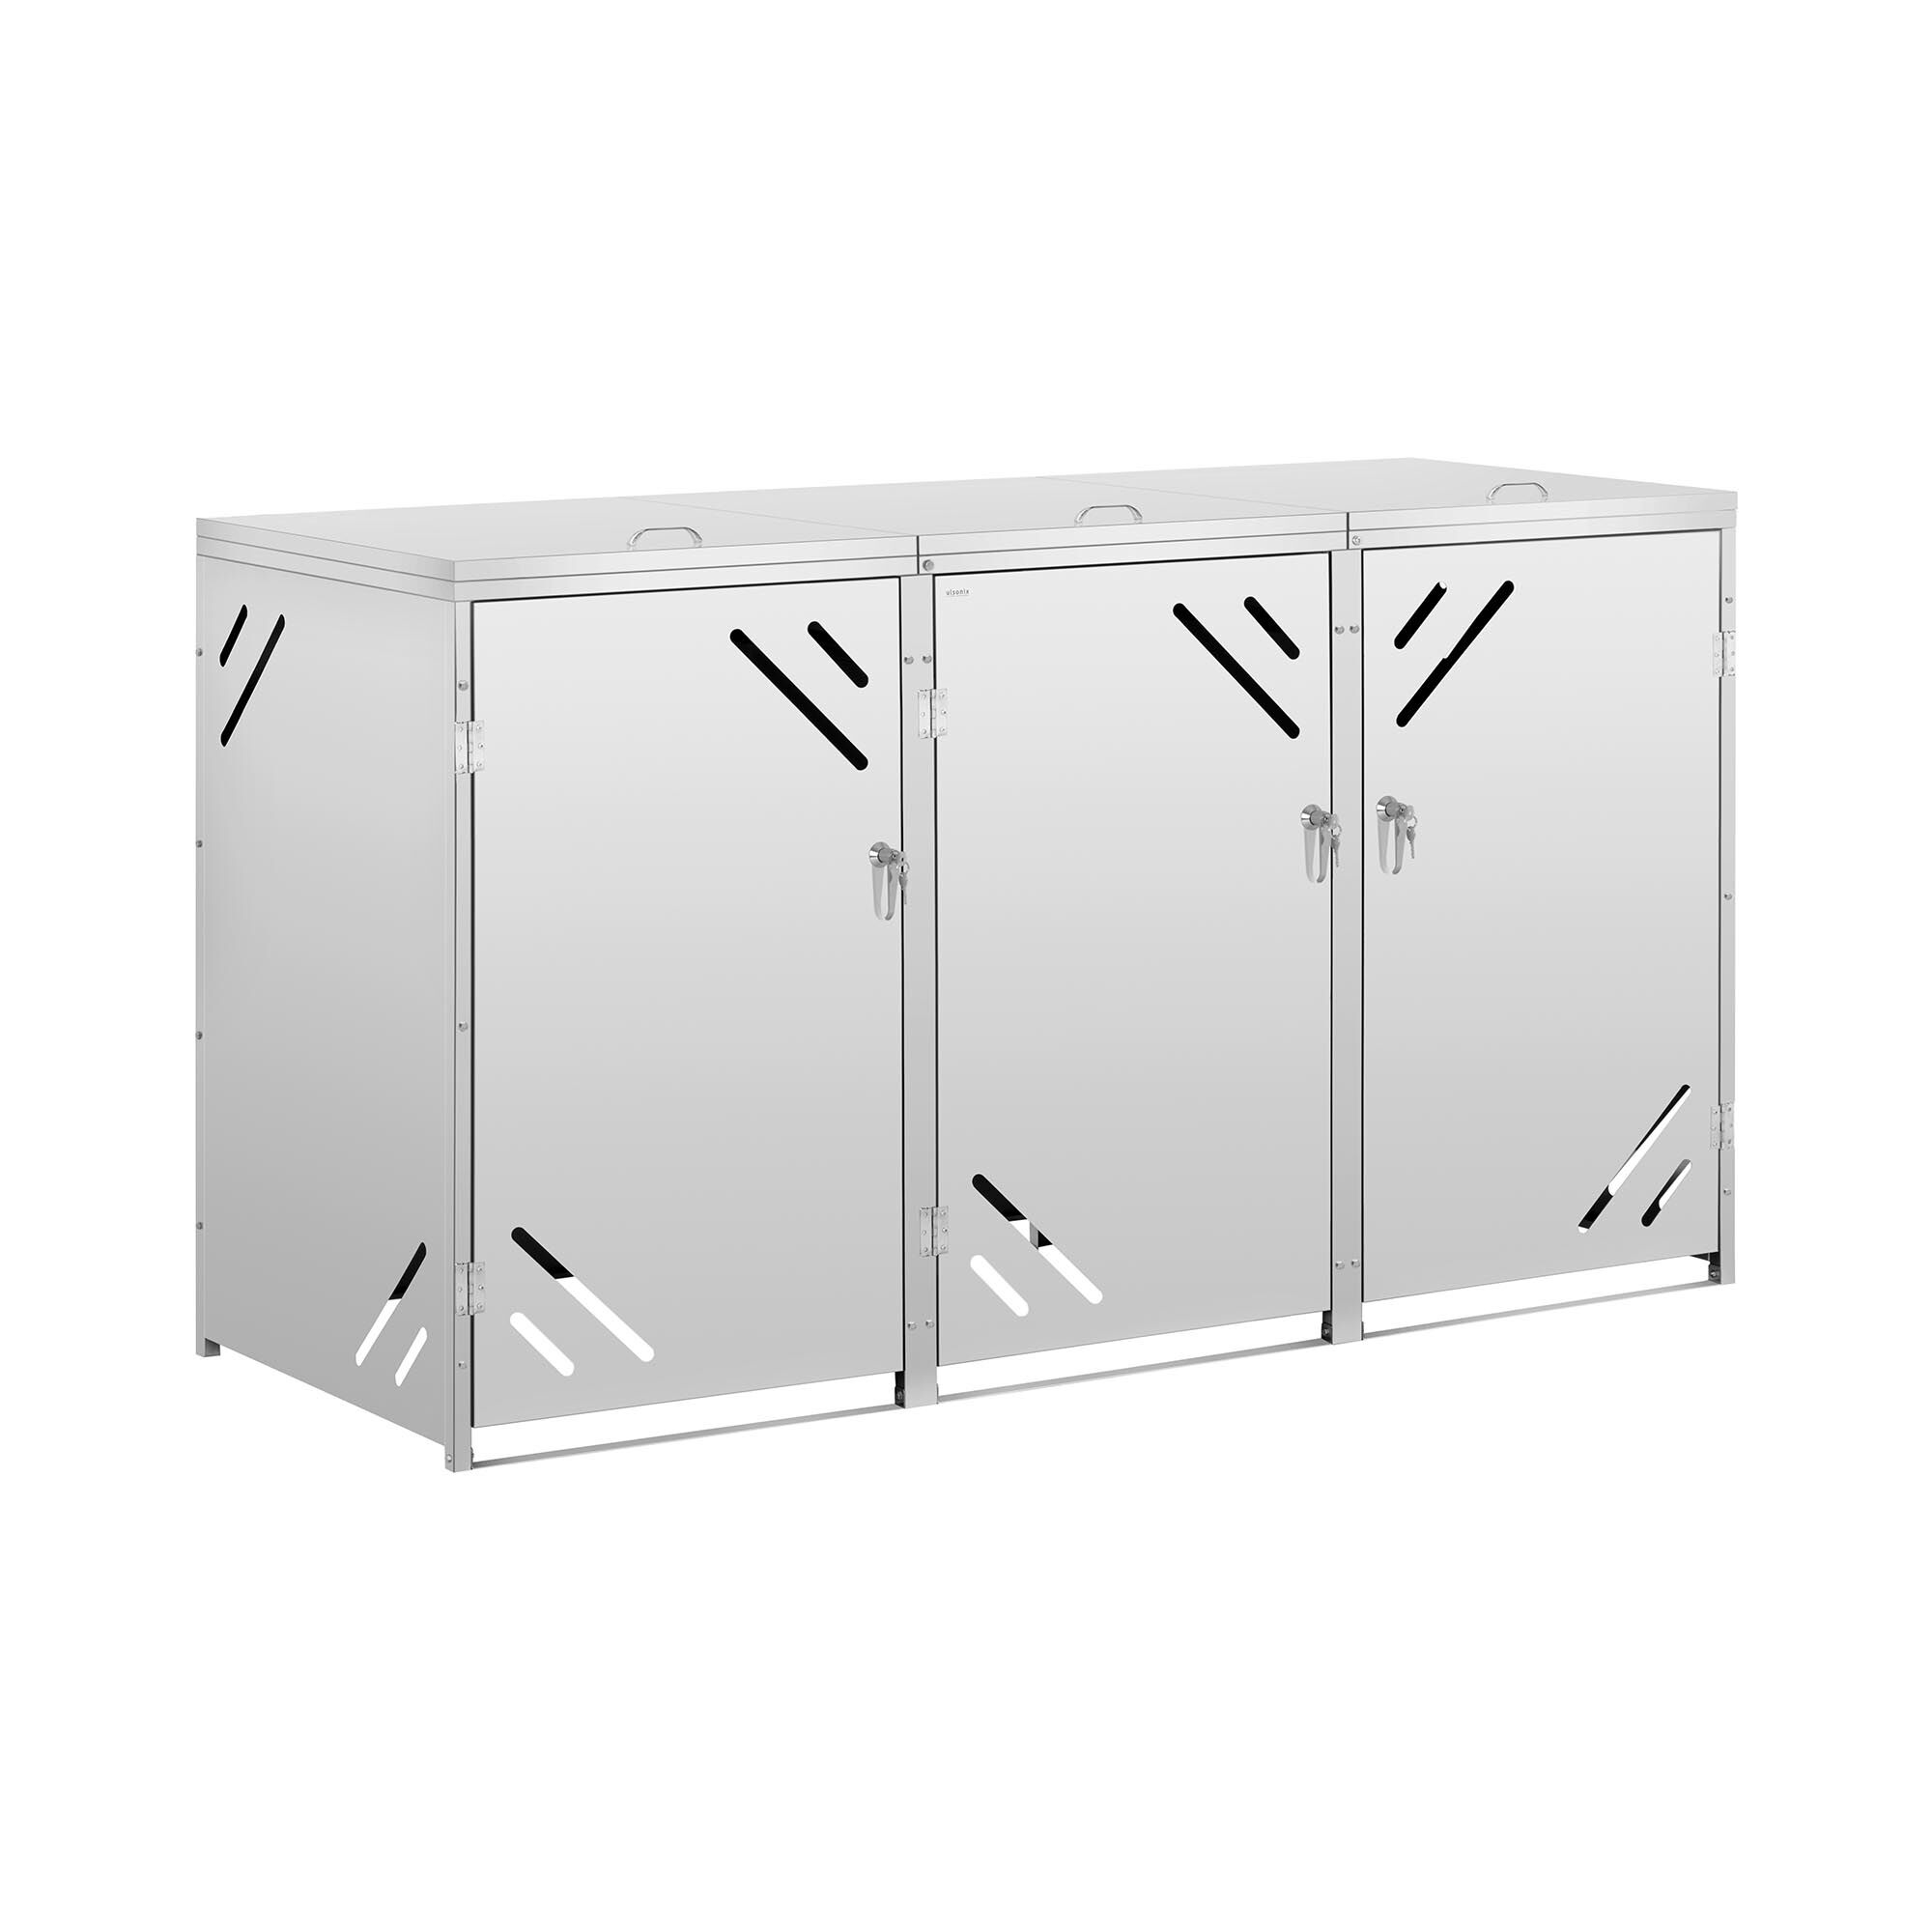 ulsonix Bin Storage Box - 3 x 240 L - diagonal air slots